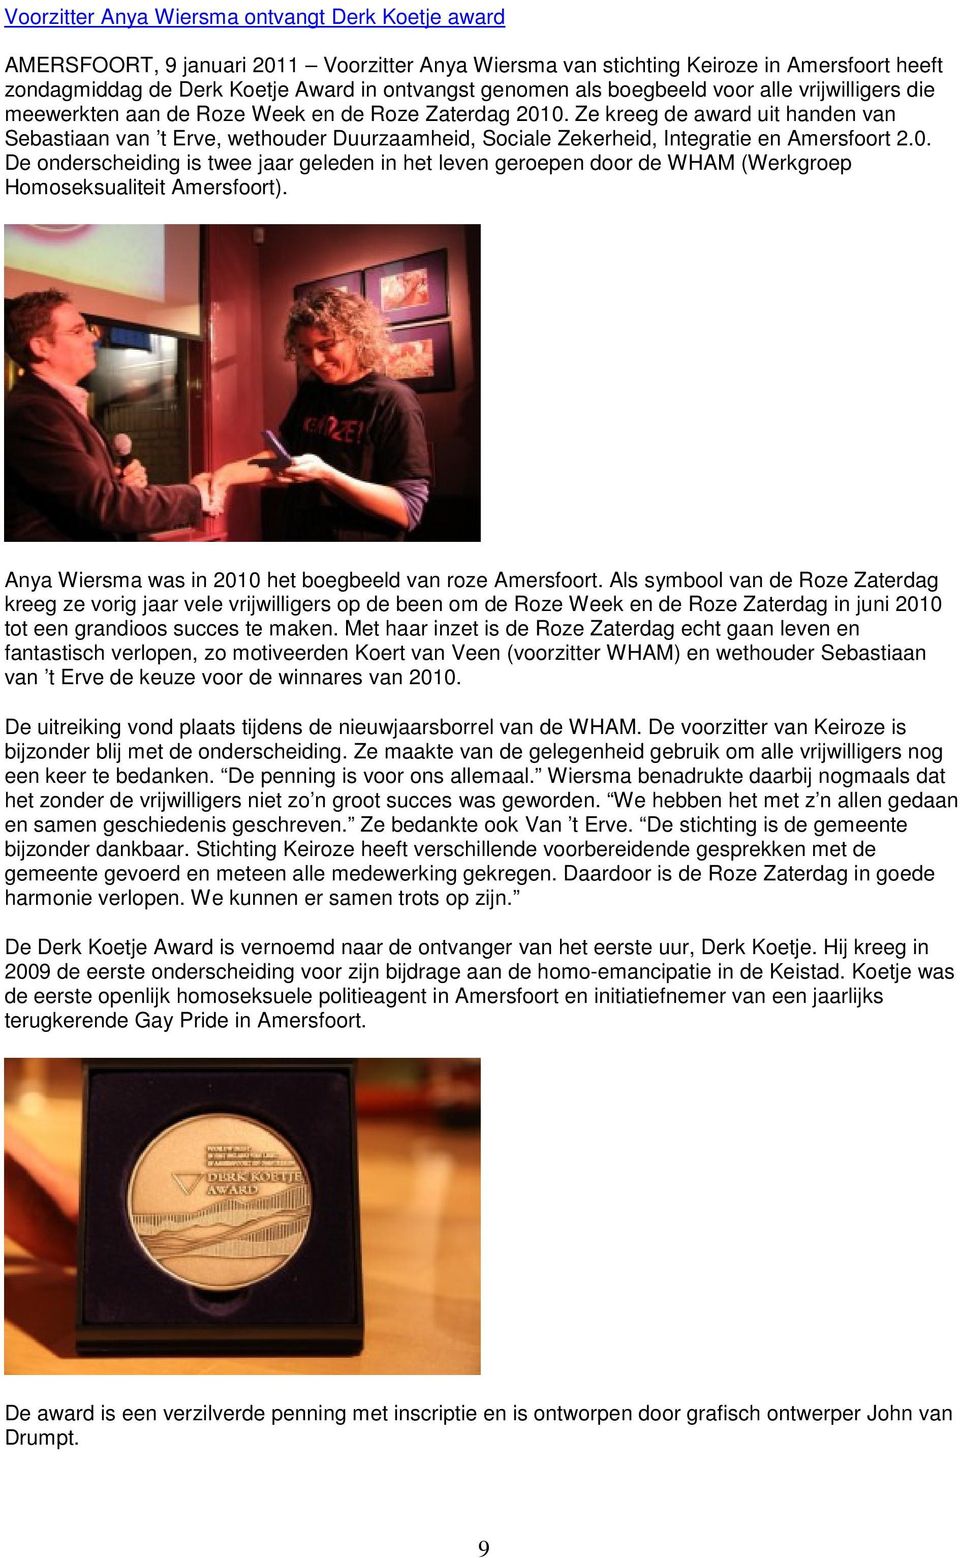 Ze kreeg de award uit handen van Sebastiaan van t Erve, wethouder Duurzaamheid, Sociale Zekerheid, Integratie en Amersfoort 2.0.